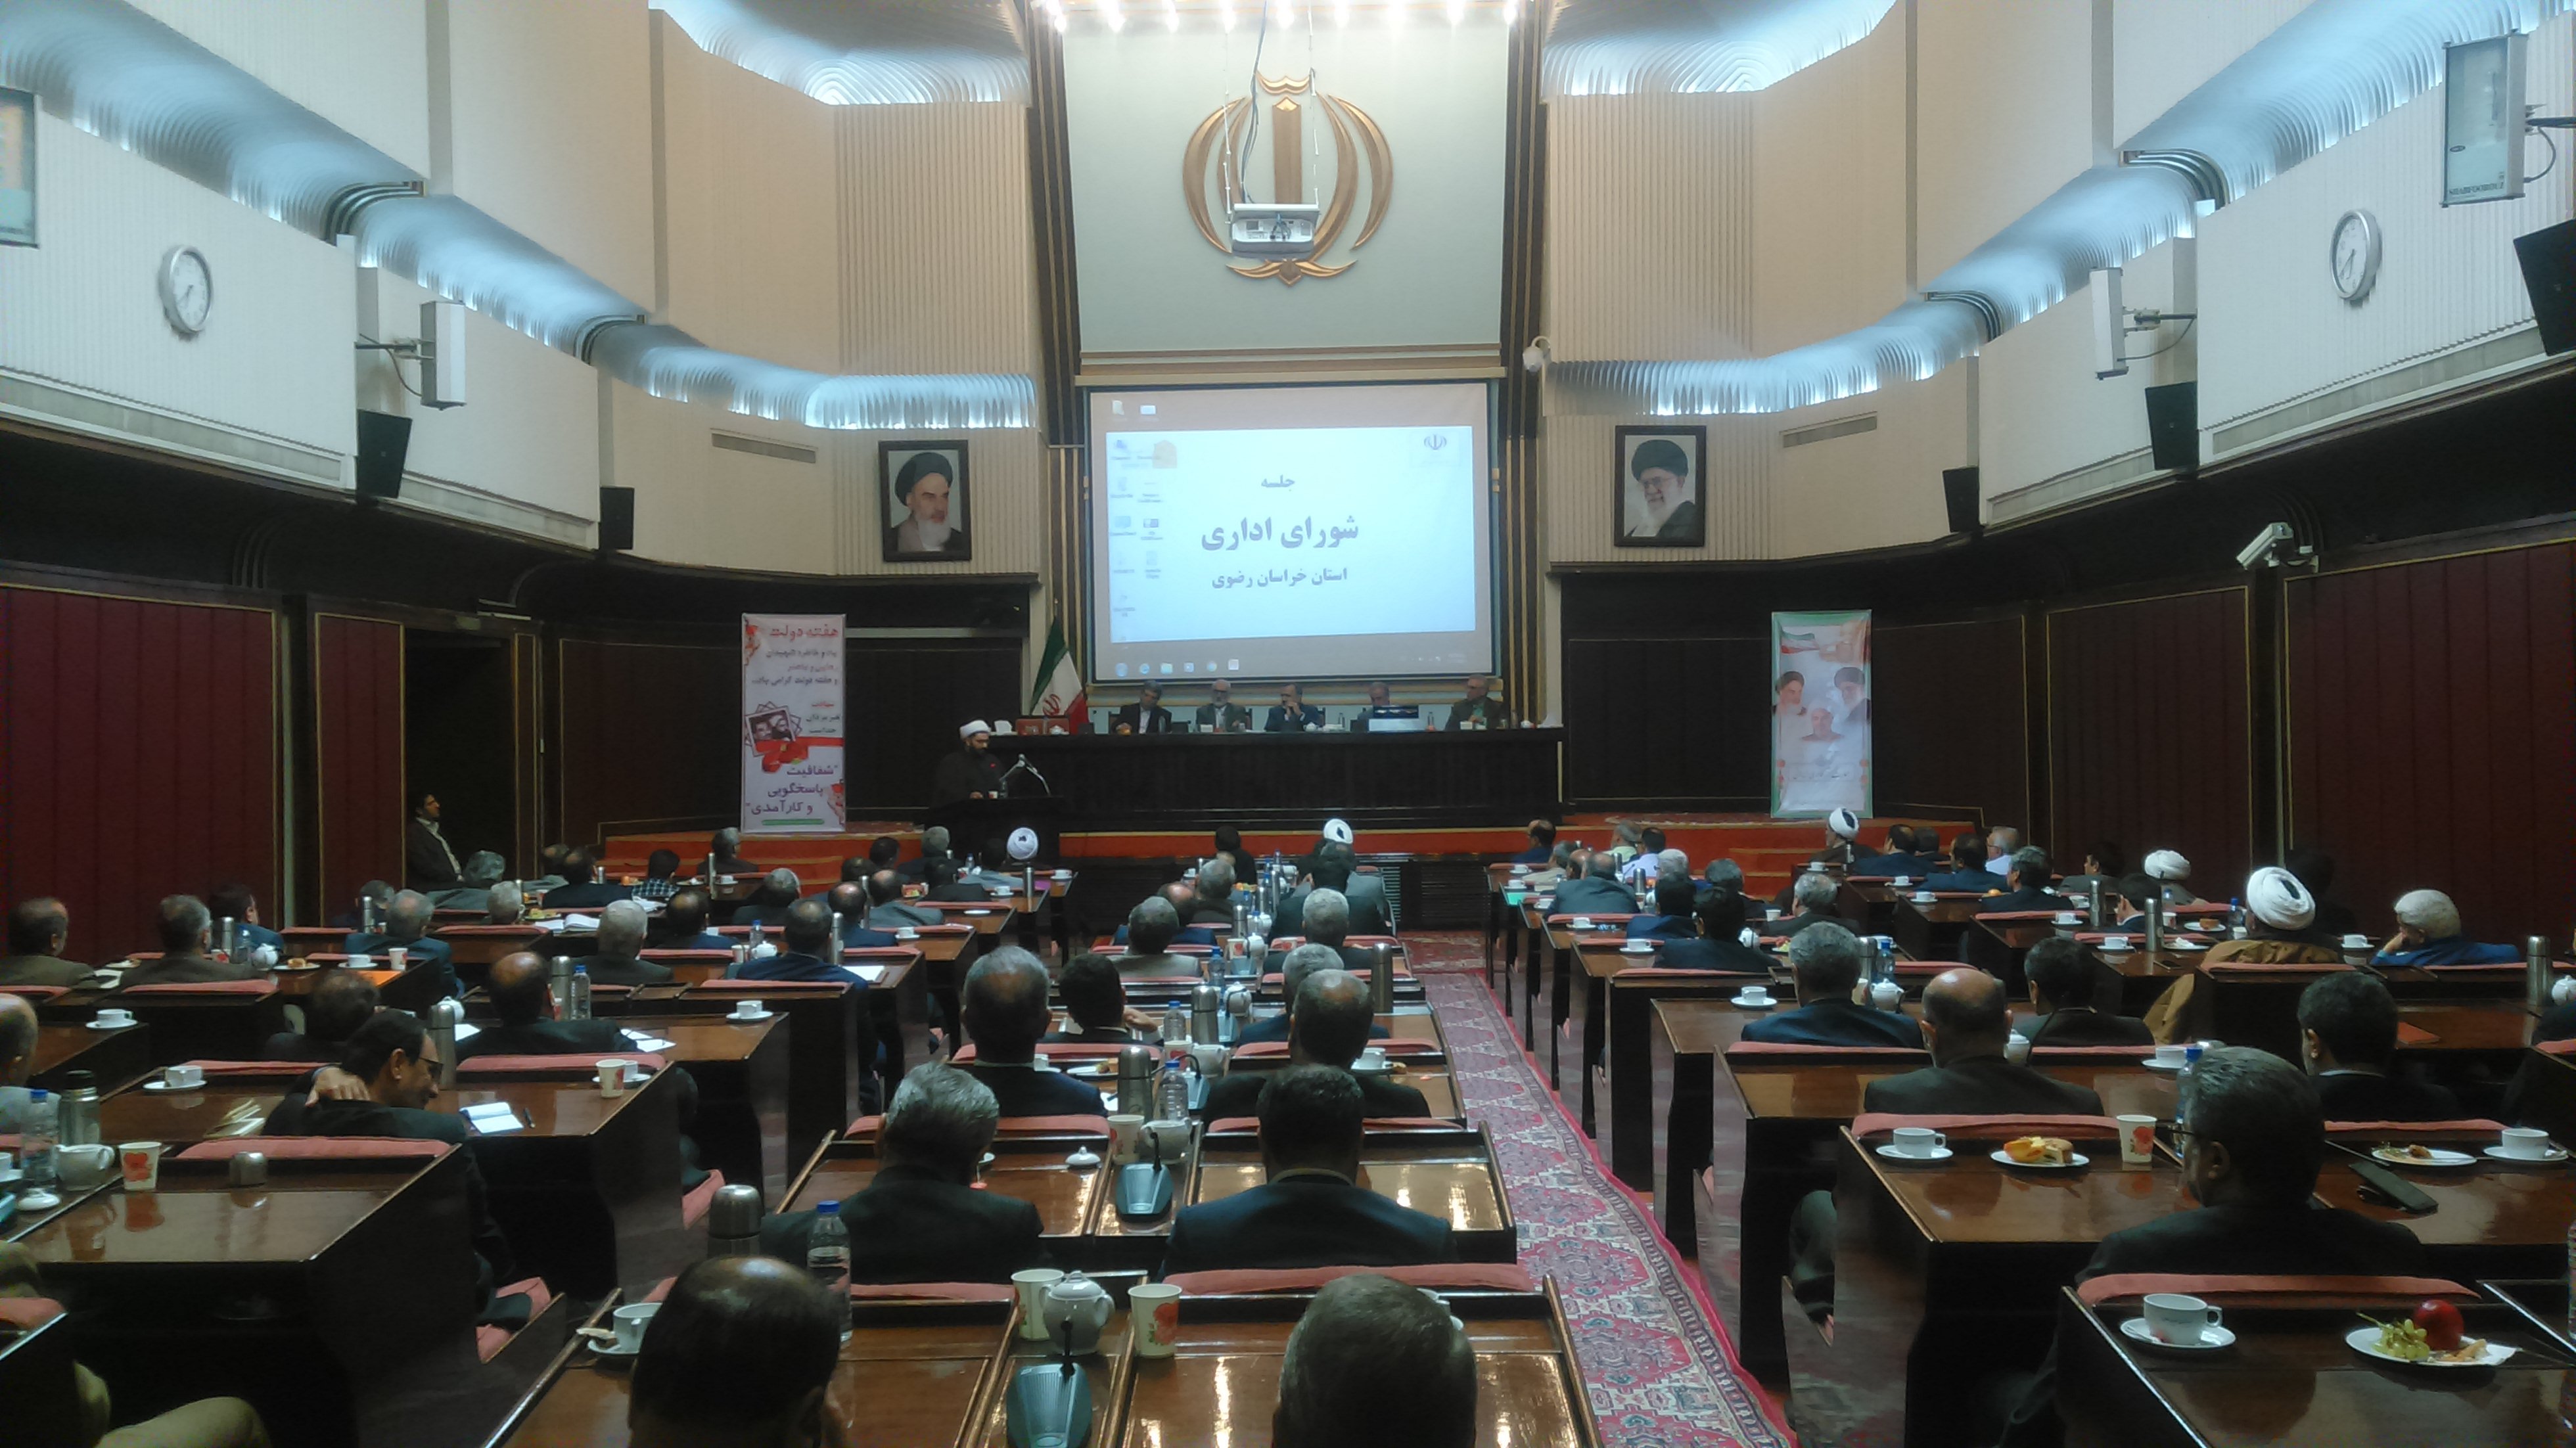 هفته دولت در خراسان رضوی با شعار شفافیت، پاسخگویی و کارآمد